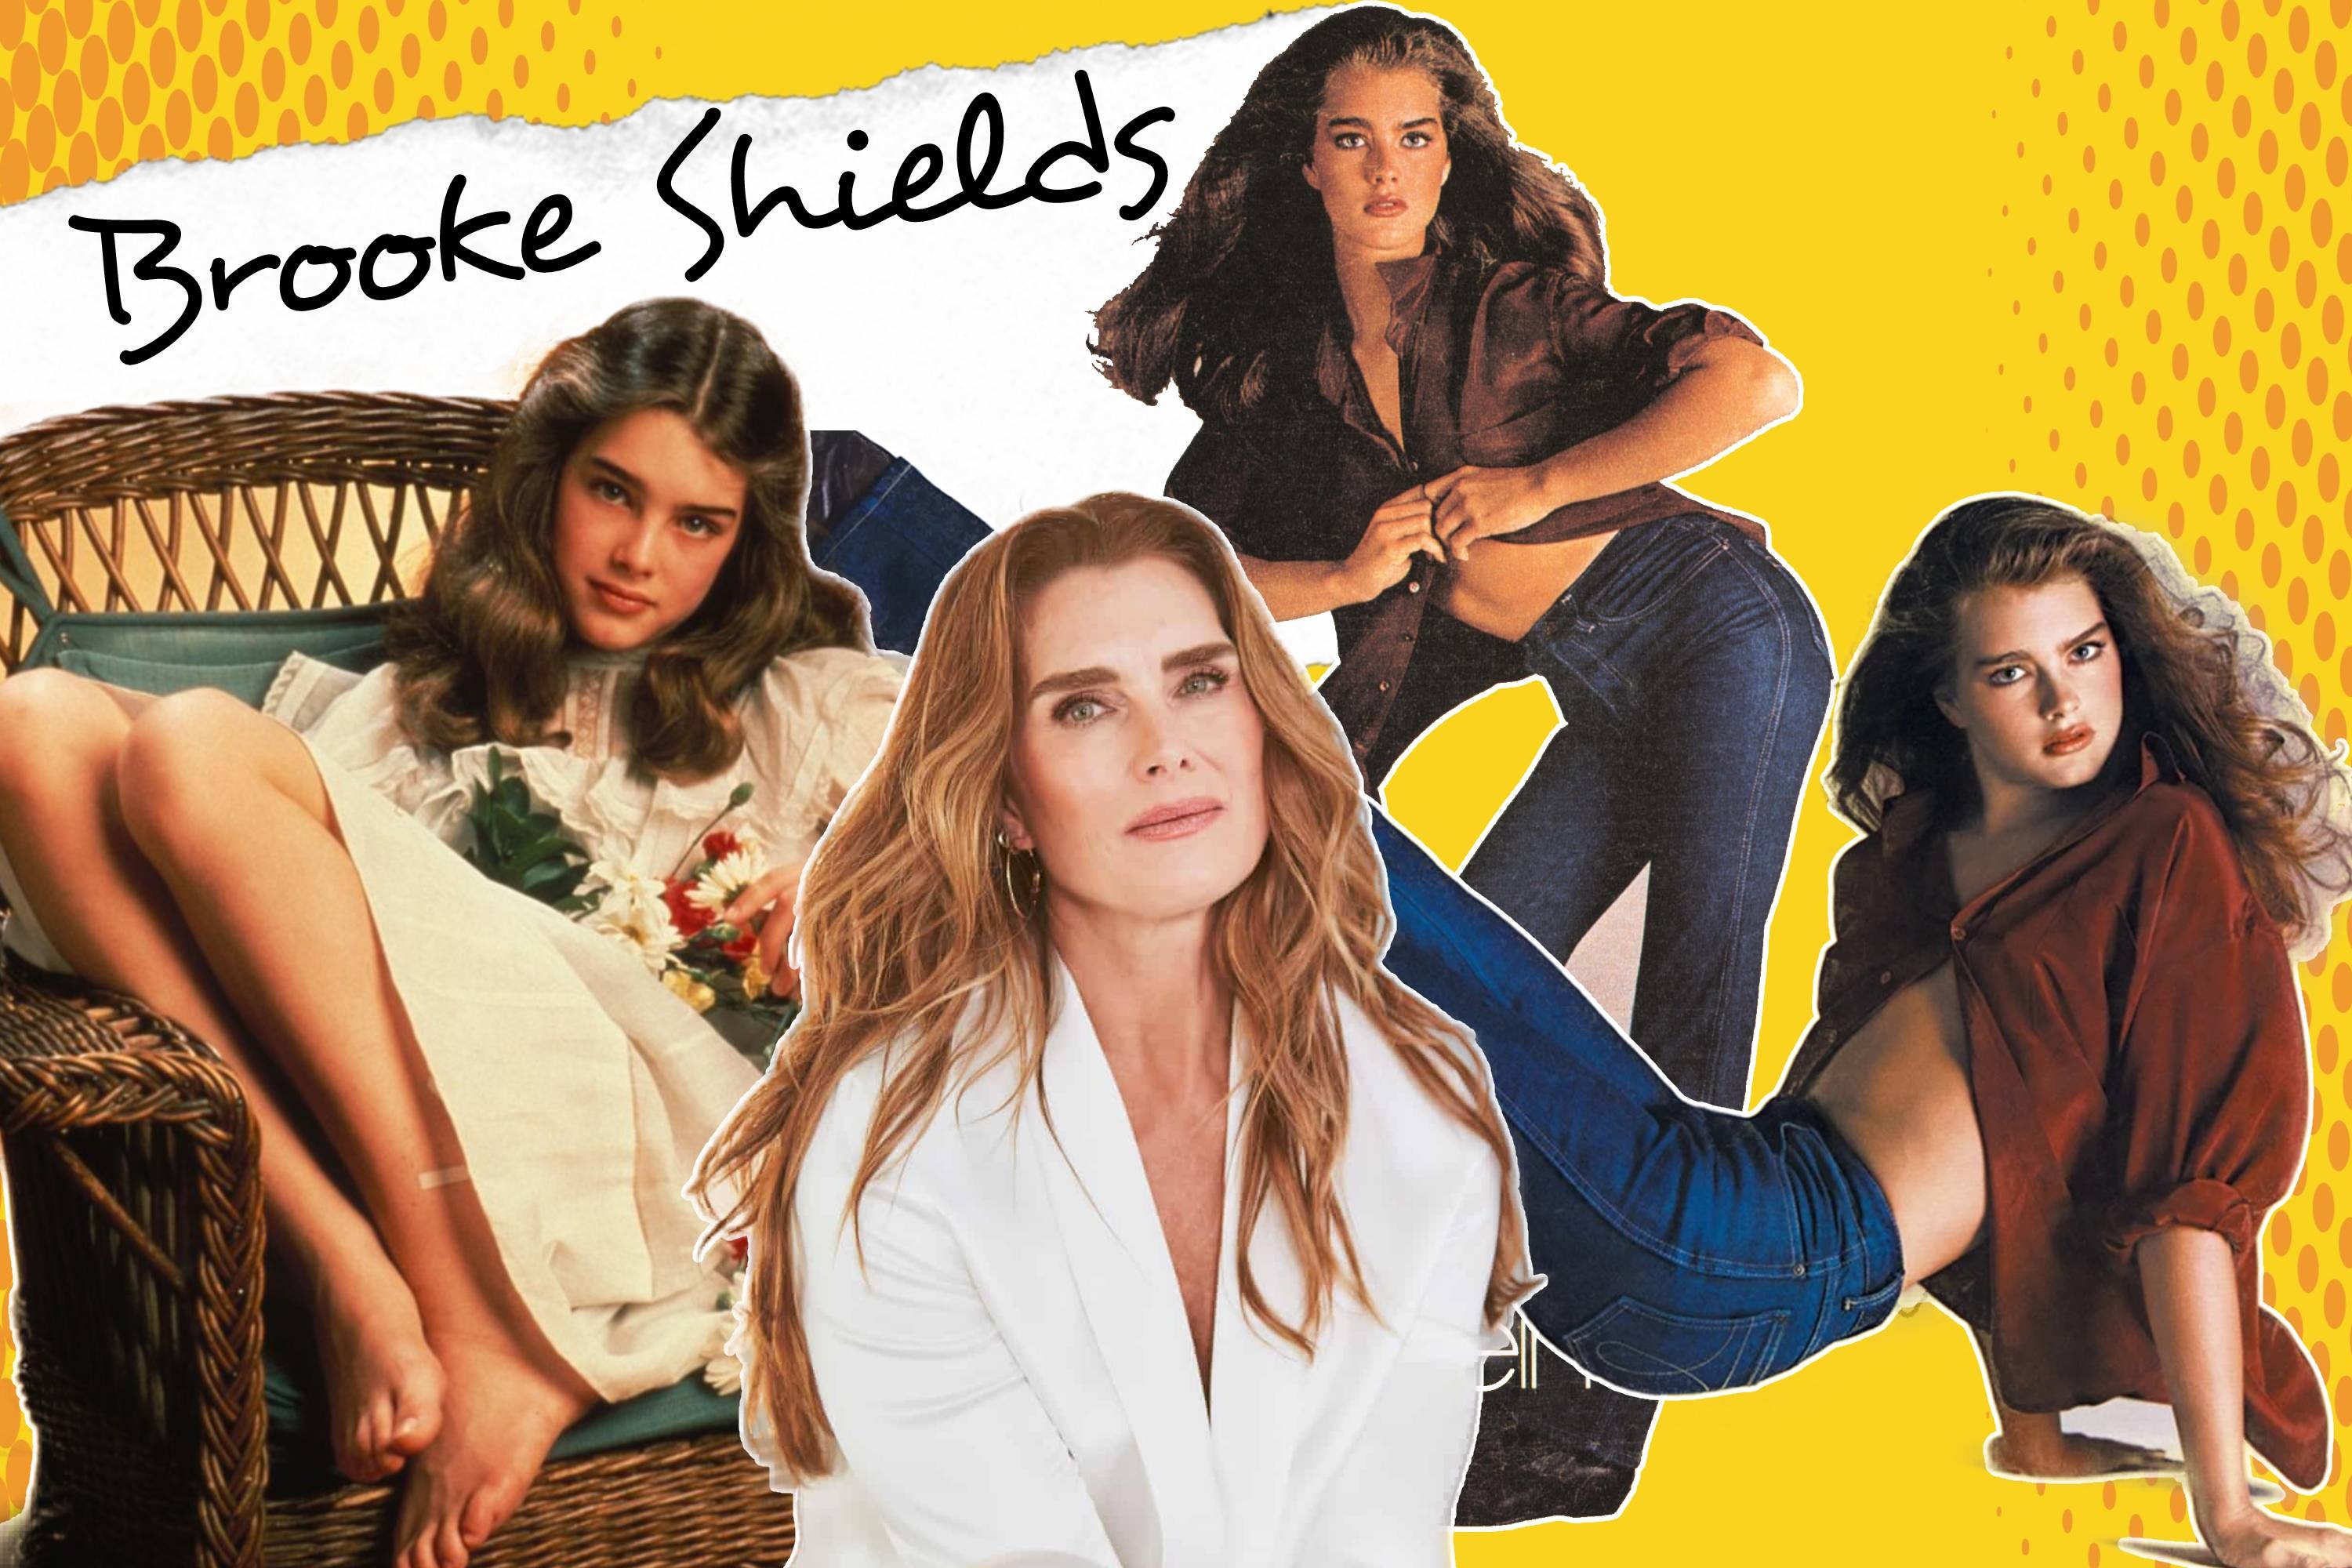 Người mẫu Brooke Shields bị ám ảnh suốt 40 năm vì cuộc phỏng vấn tàn nhẫn